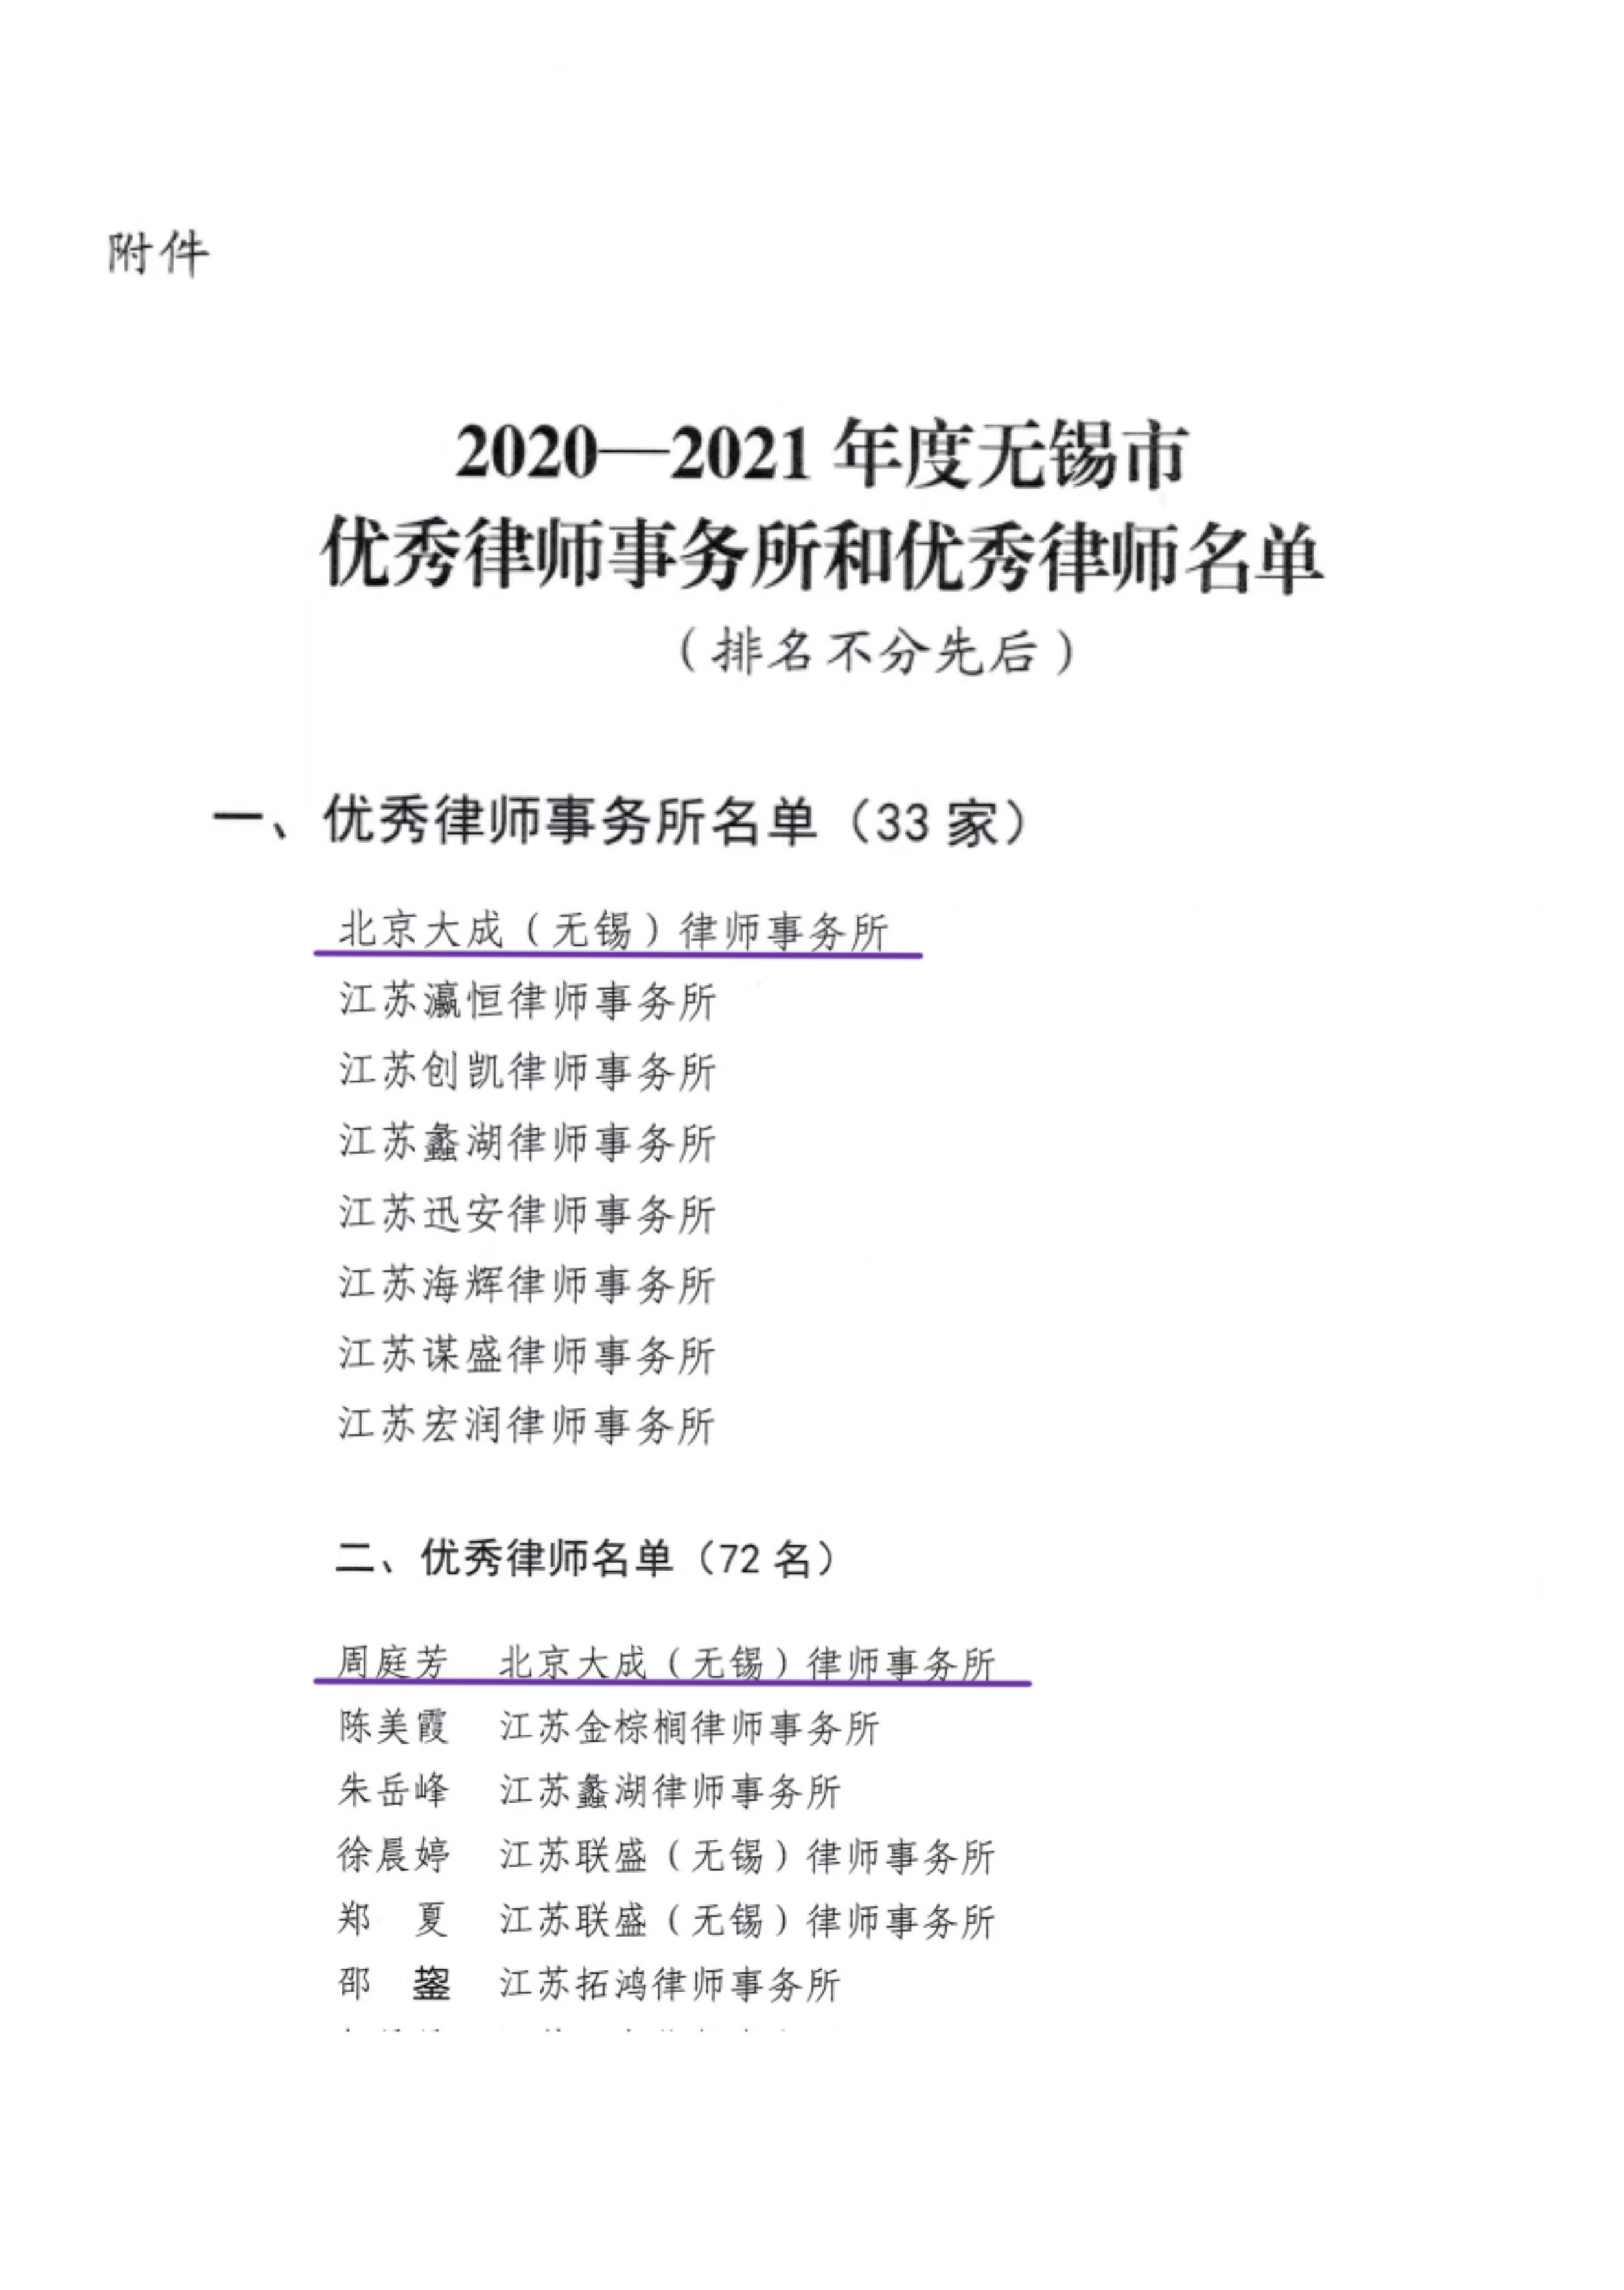 大成无锡获评2020-2021无锡市优秀律师事务所， 周庭芳获评锡市优秀律师